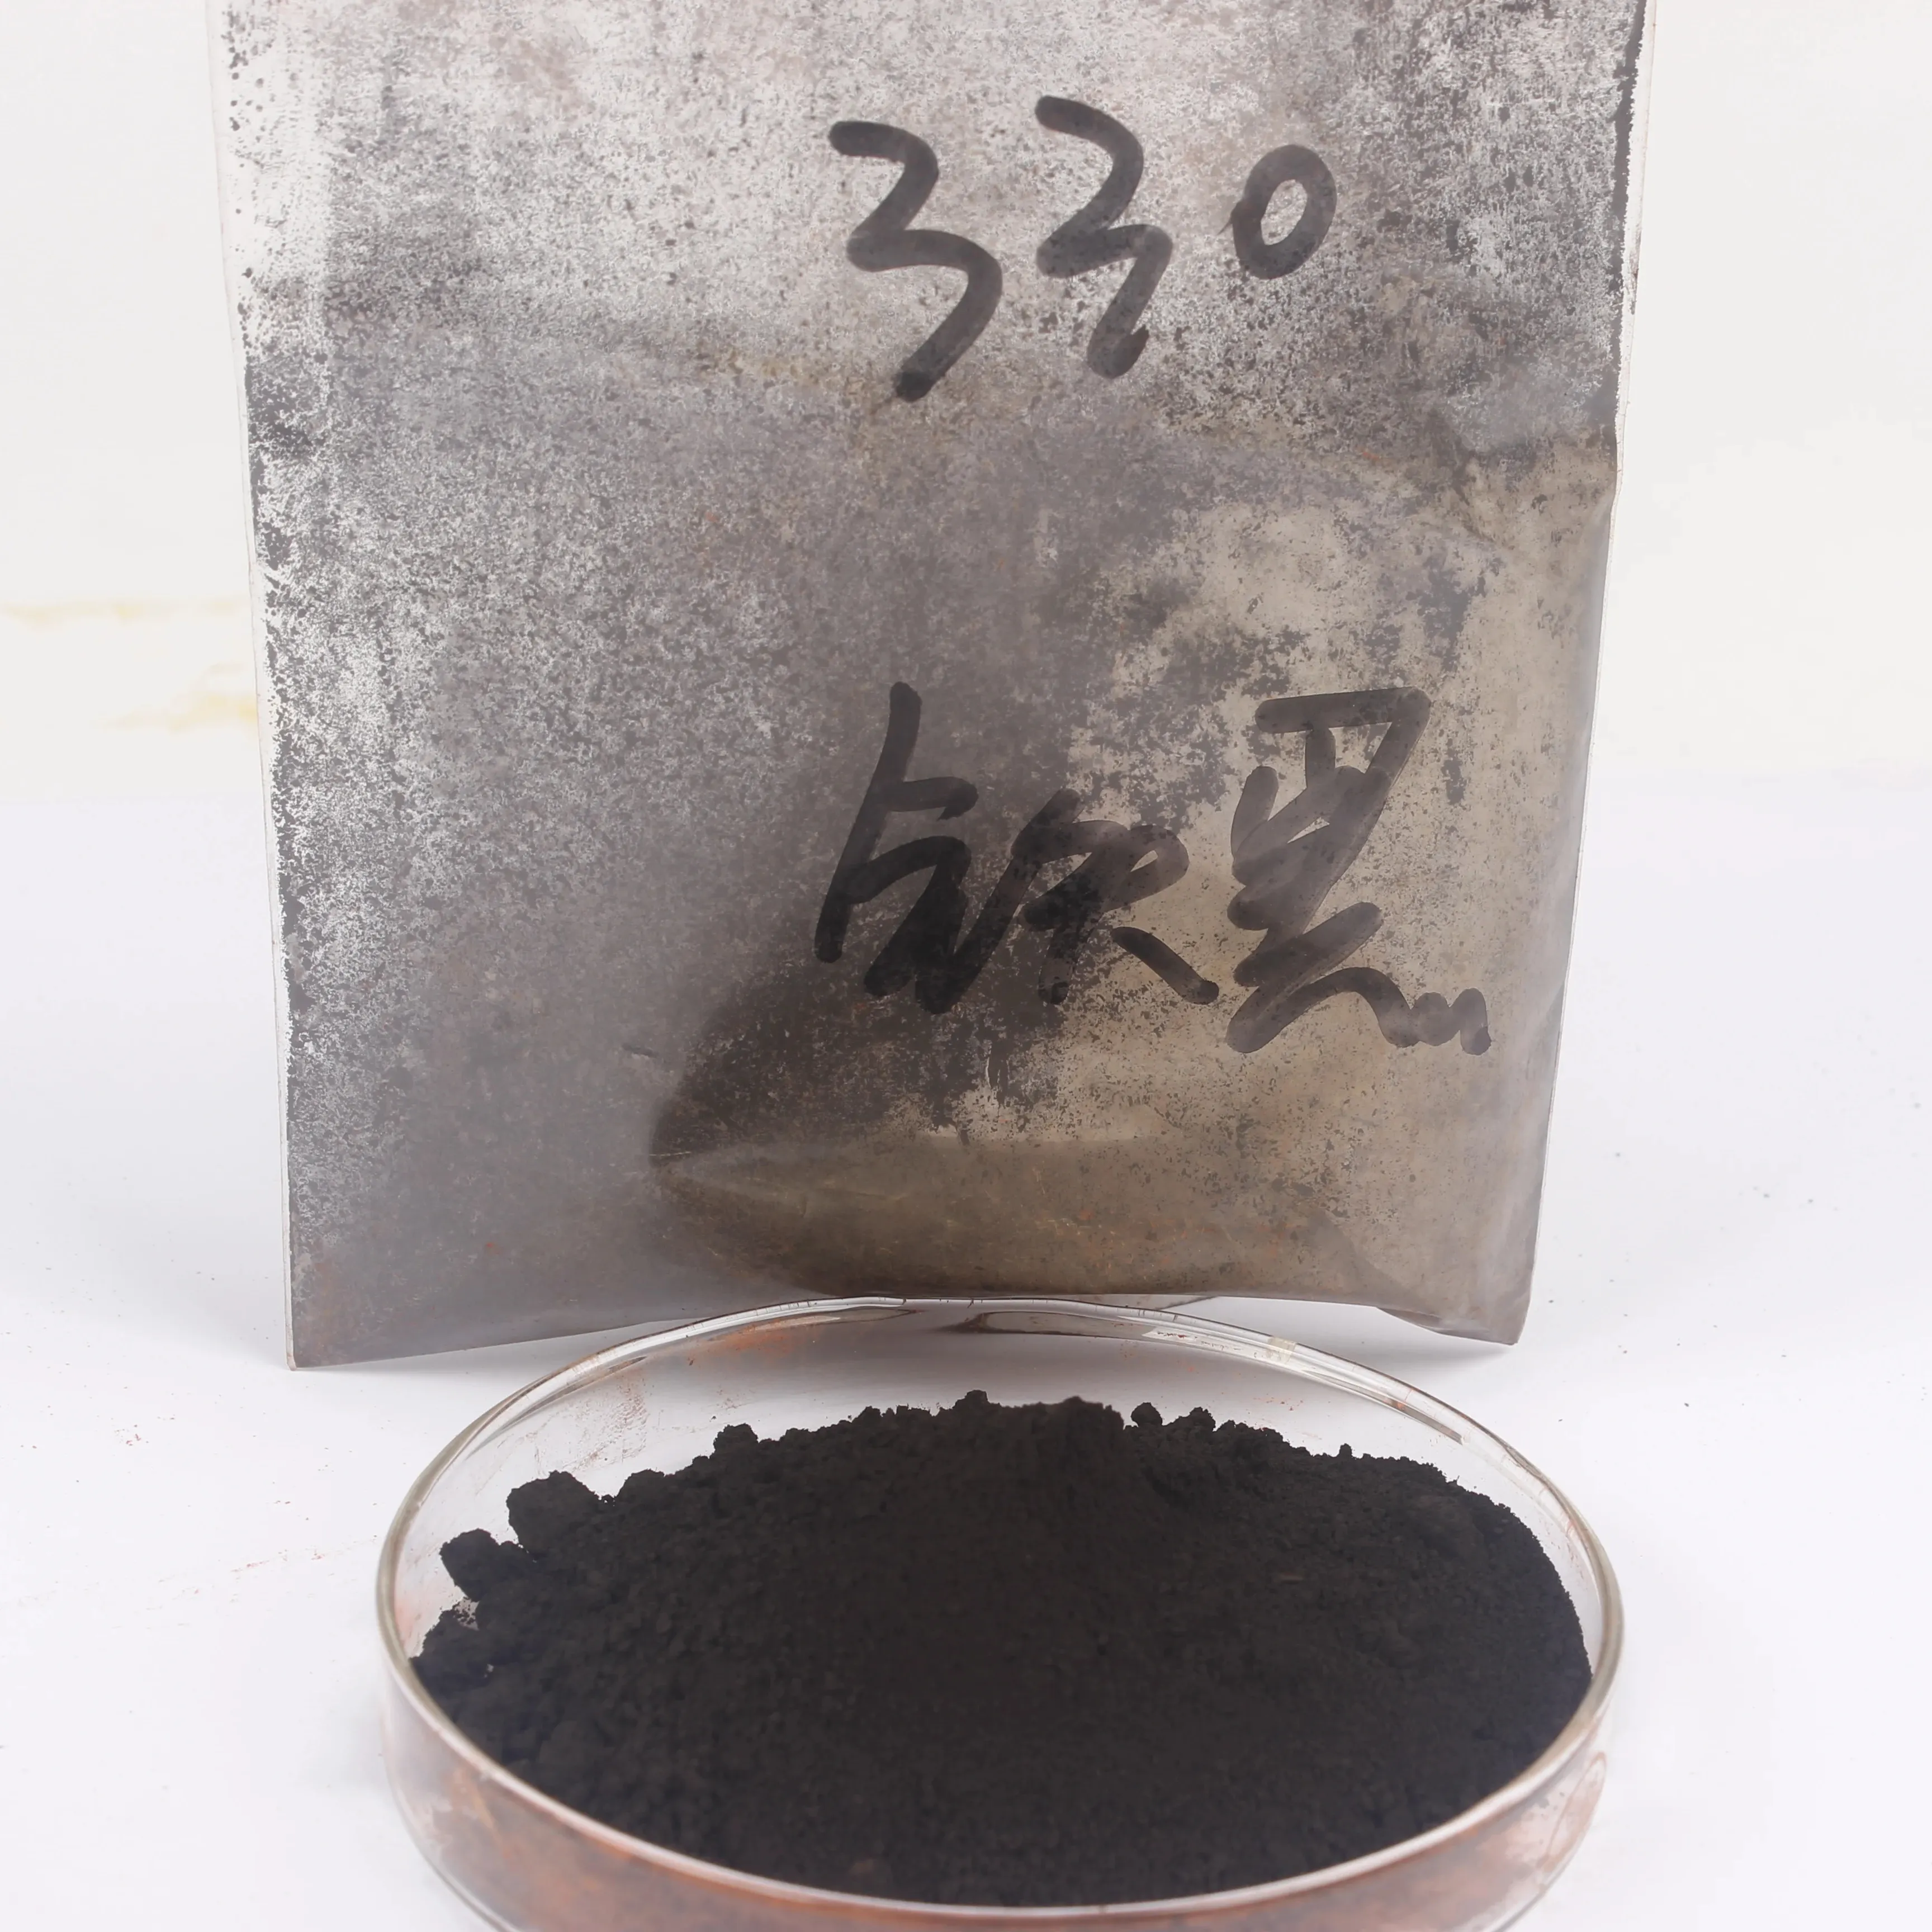 Pigmento de óxido de hierro hyrox negro 330 722 750